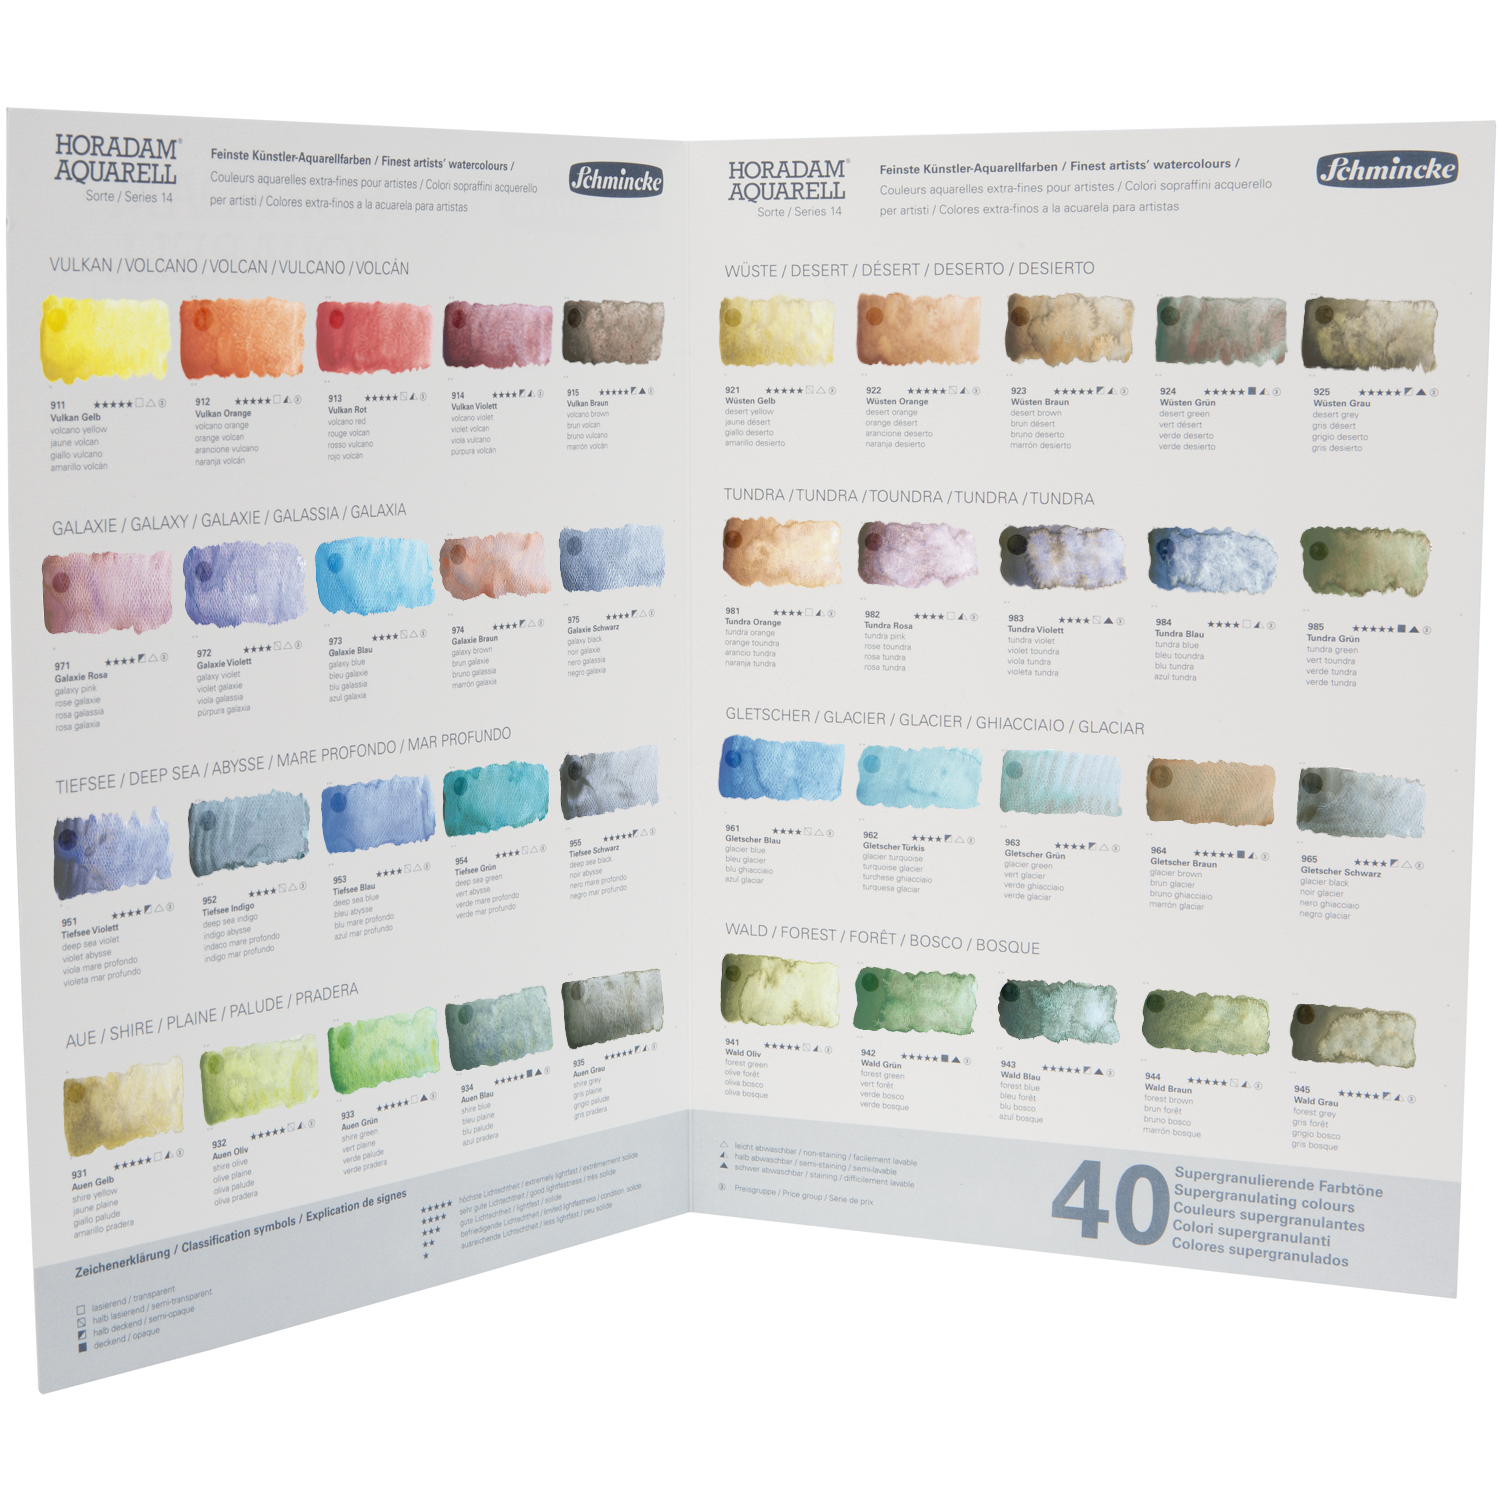 NEU Horadam Aquarell Super Granulation Farbkarte / Dot Card mit 40 Farbtönen